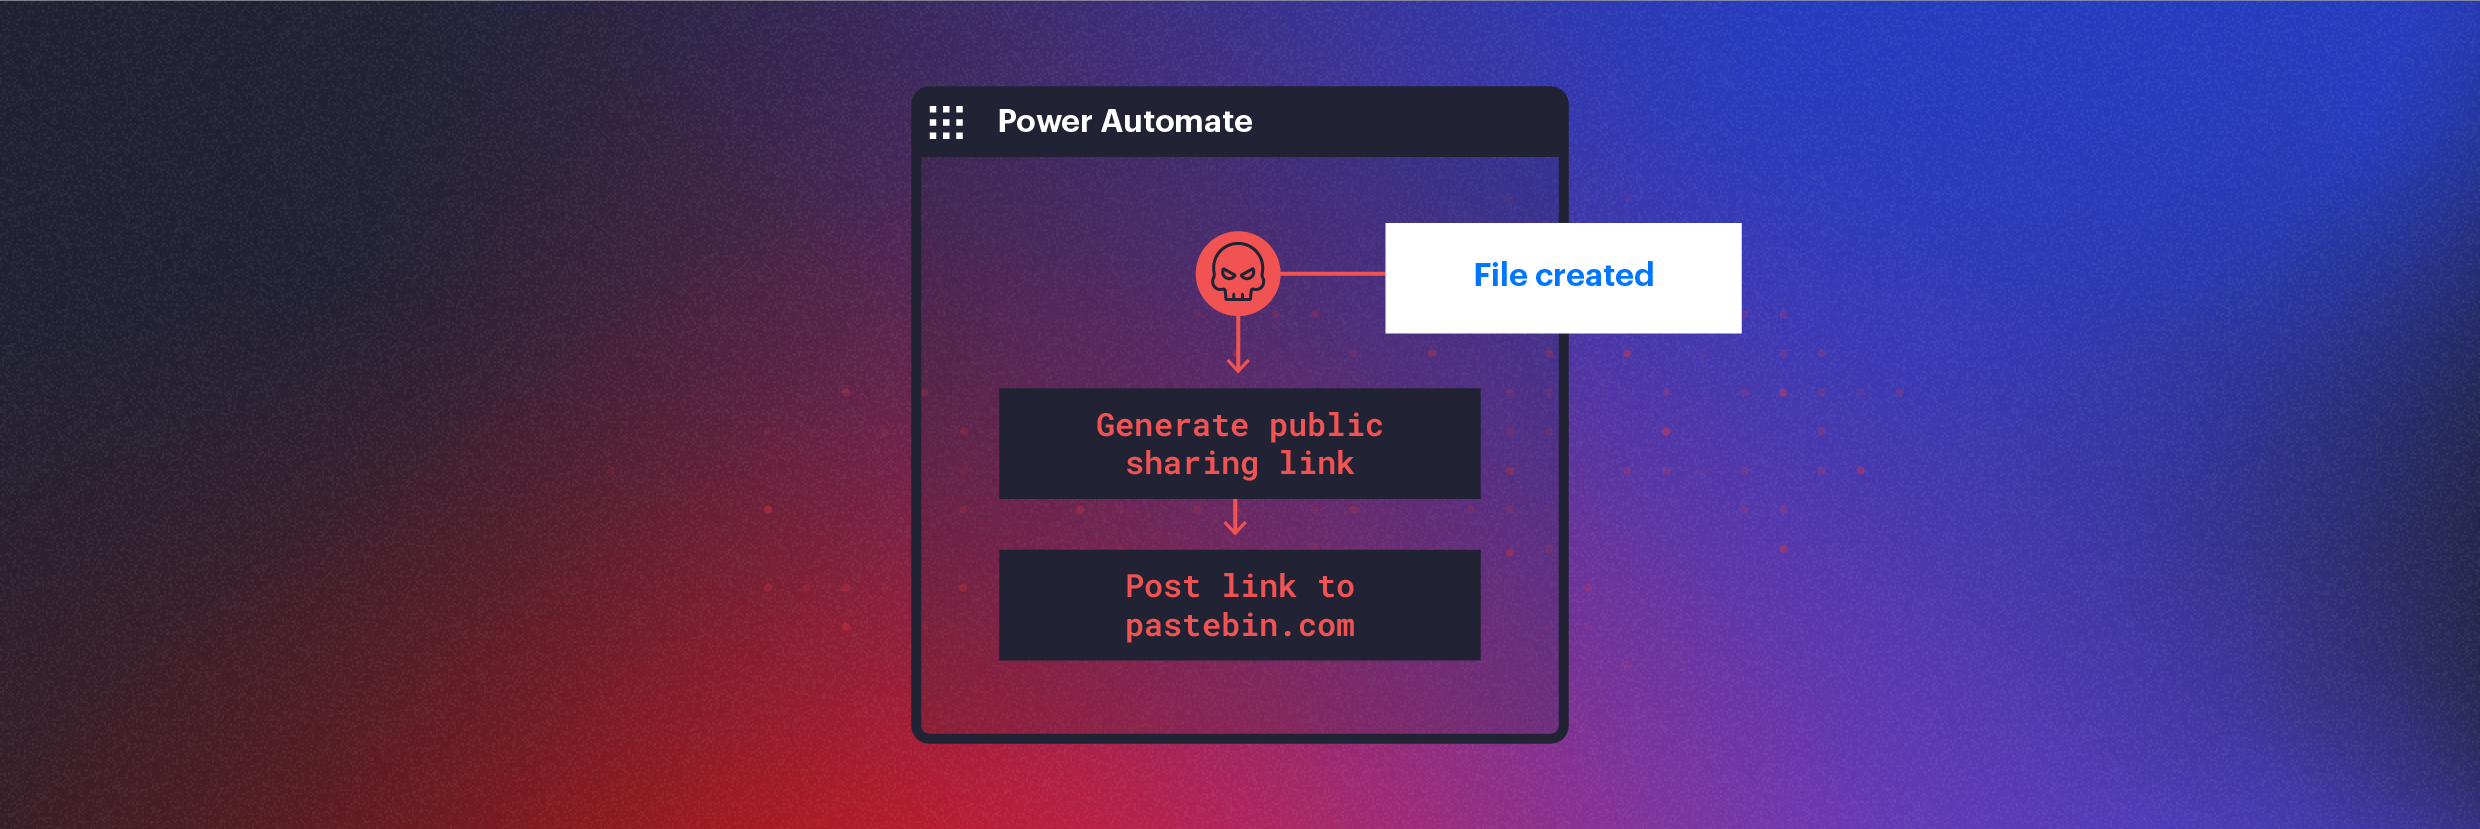 Verwendung von Power Automate für die verdeckte Datenexfiltration in Microsoft 365